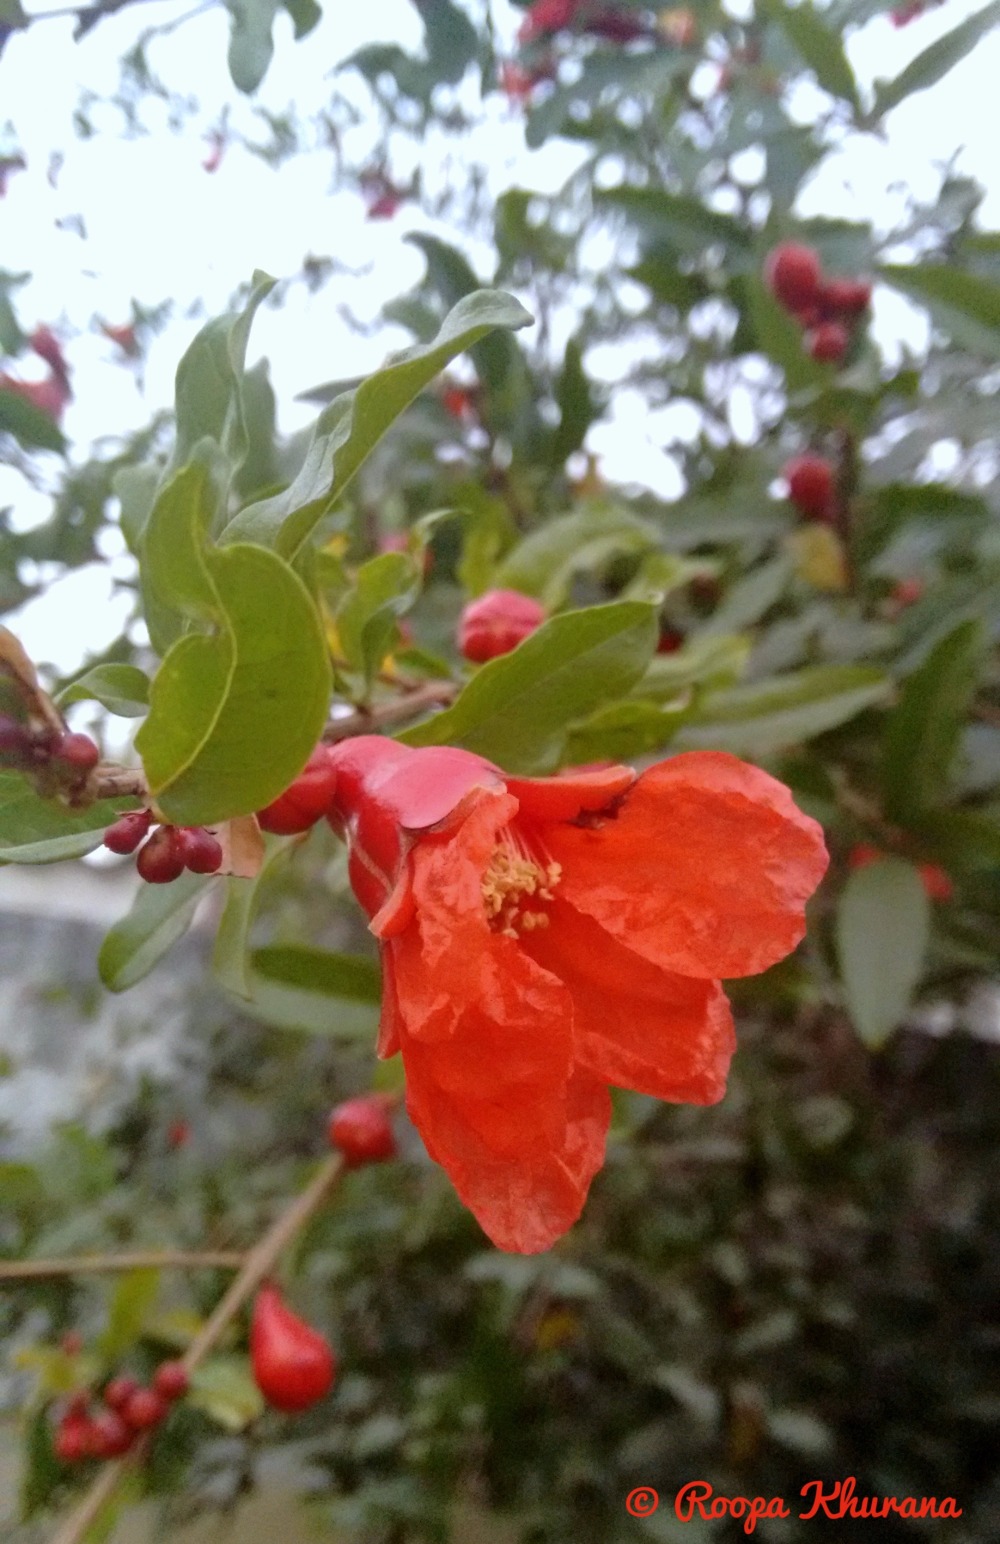 pomegranate-flower-fruit-green-leaves-nature